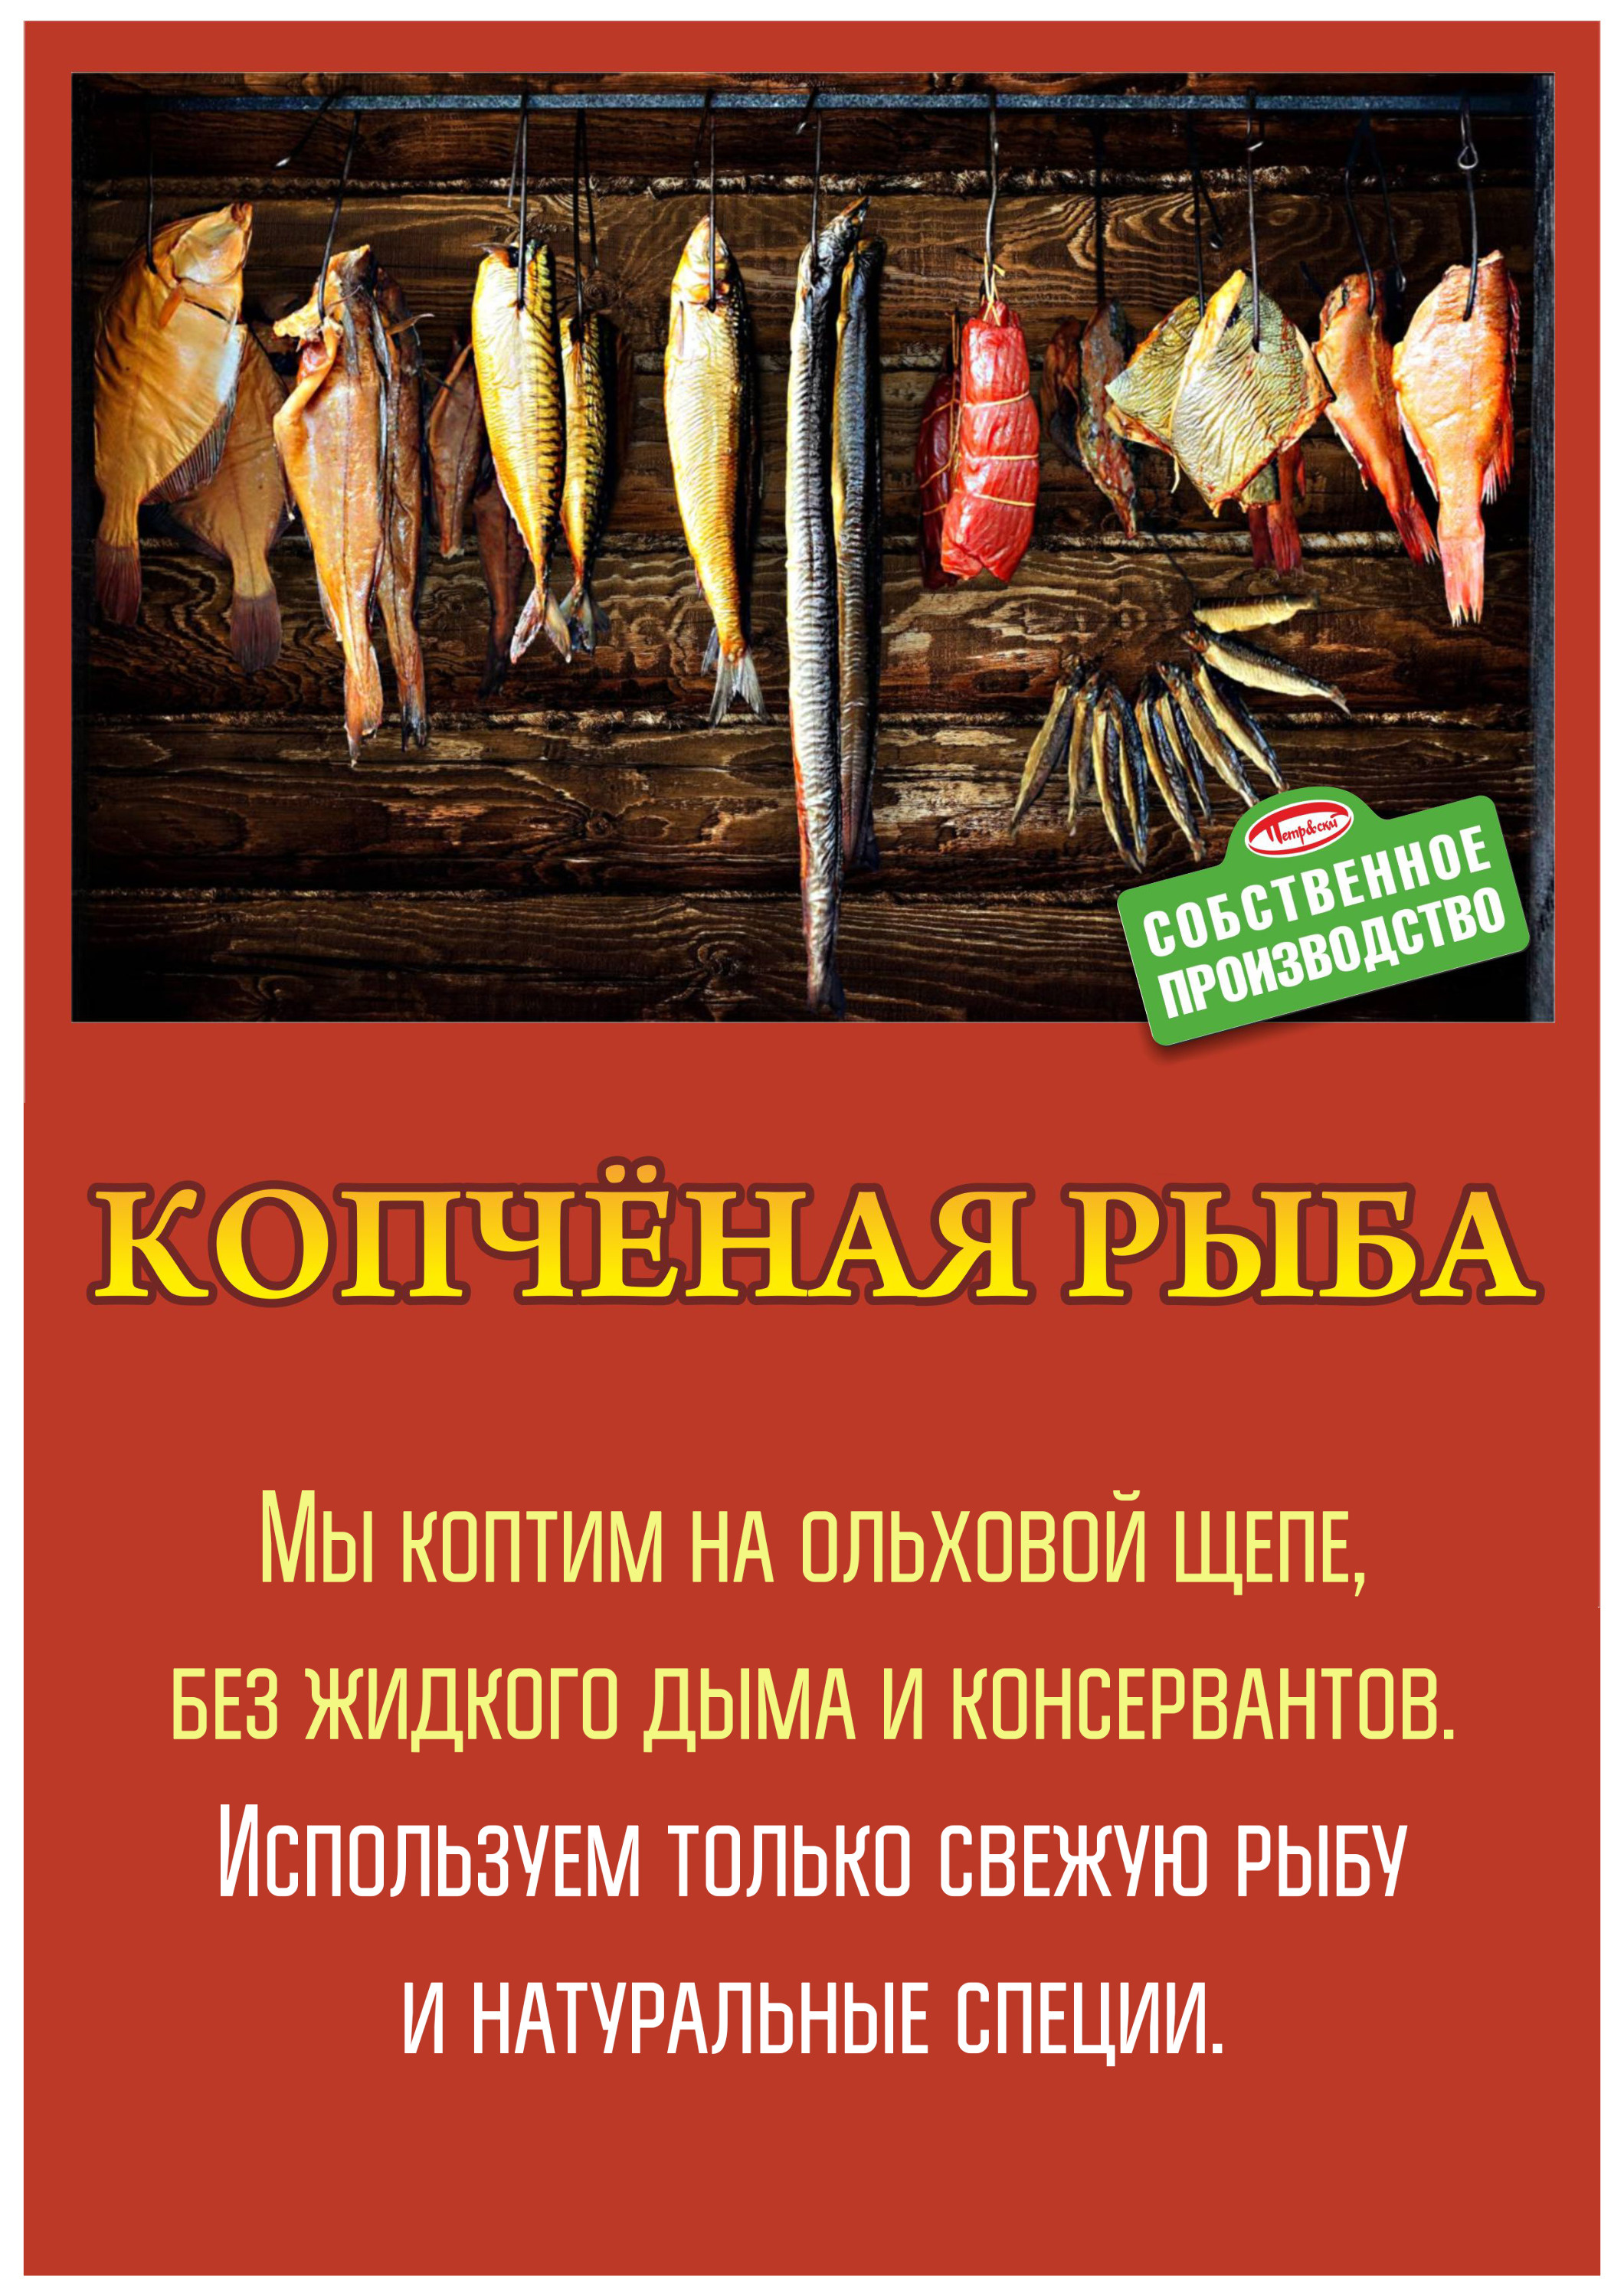 Рыбу в торговой сети «Петровский» коптят на натуральной ольховой щепе